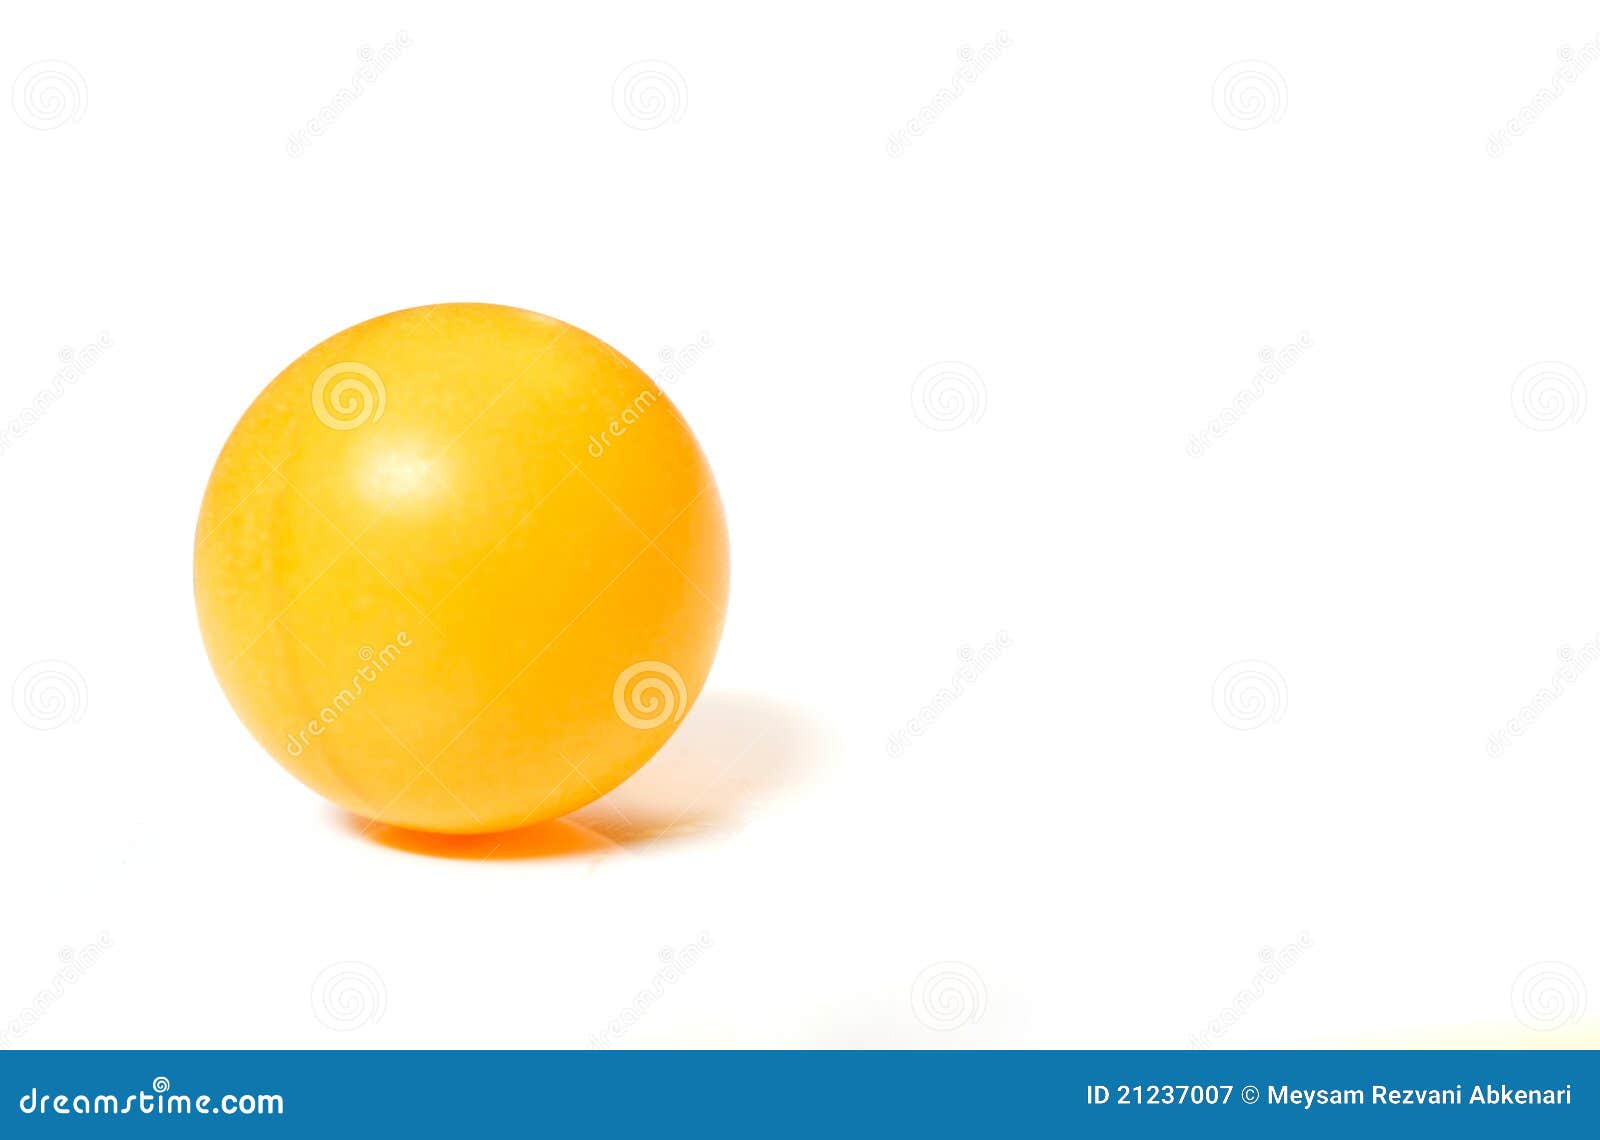 ping pong ball